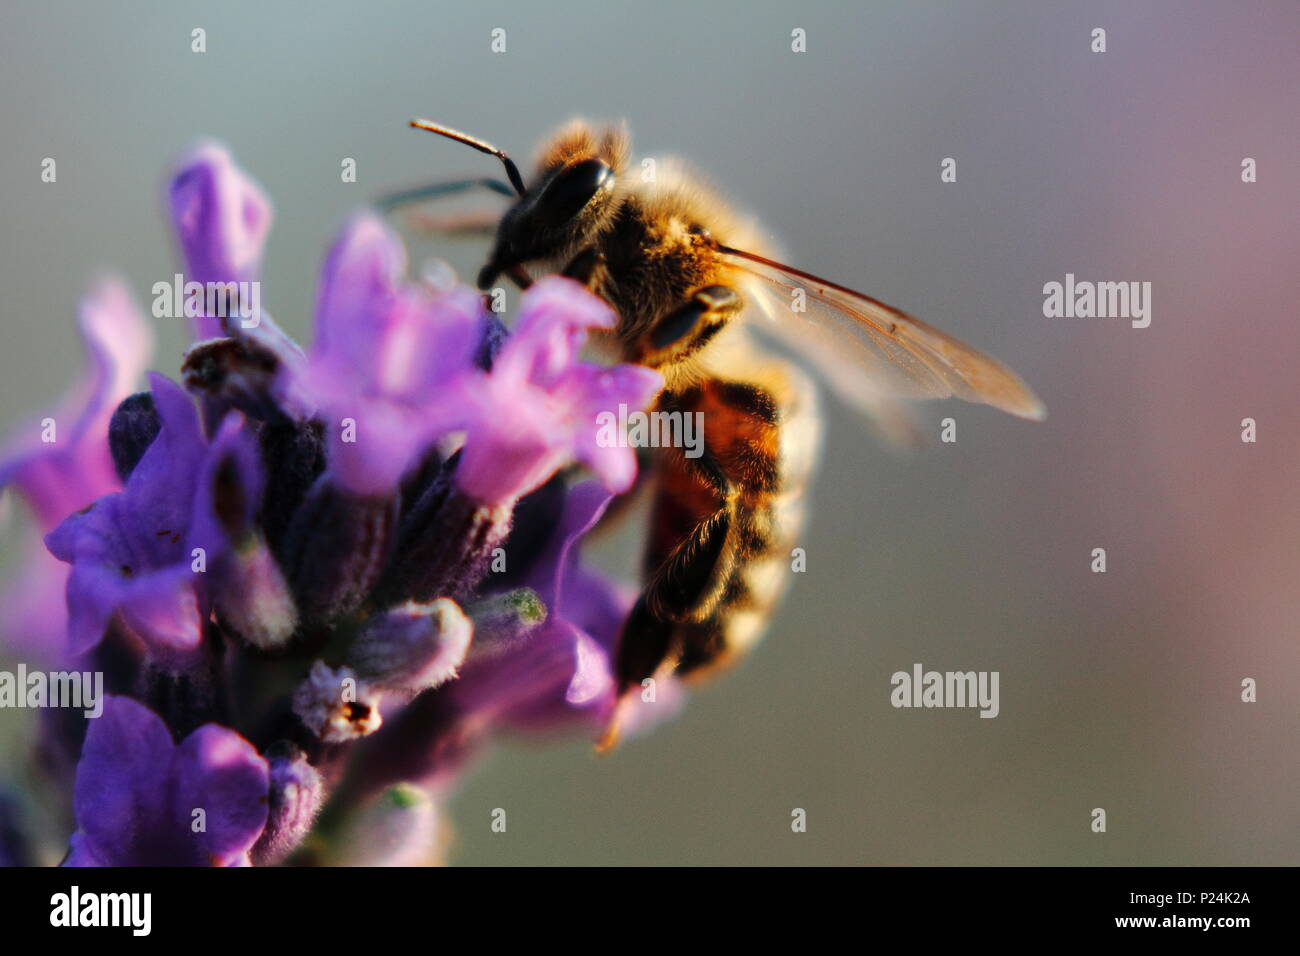 European honey bee on lavender, westliche Honigbiene auf Lavendelblüte, apis mellifera Stock Photo